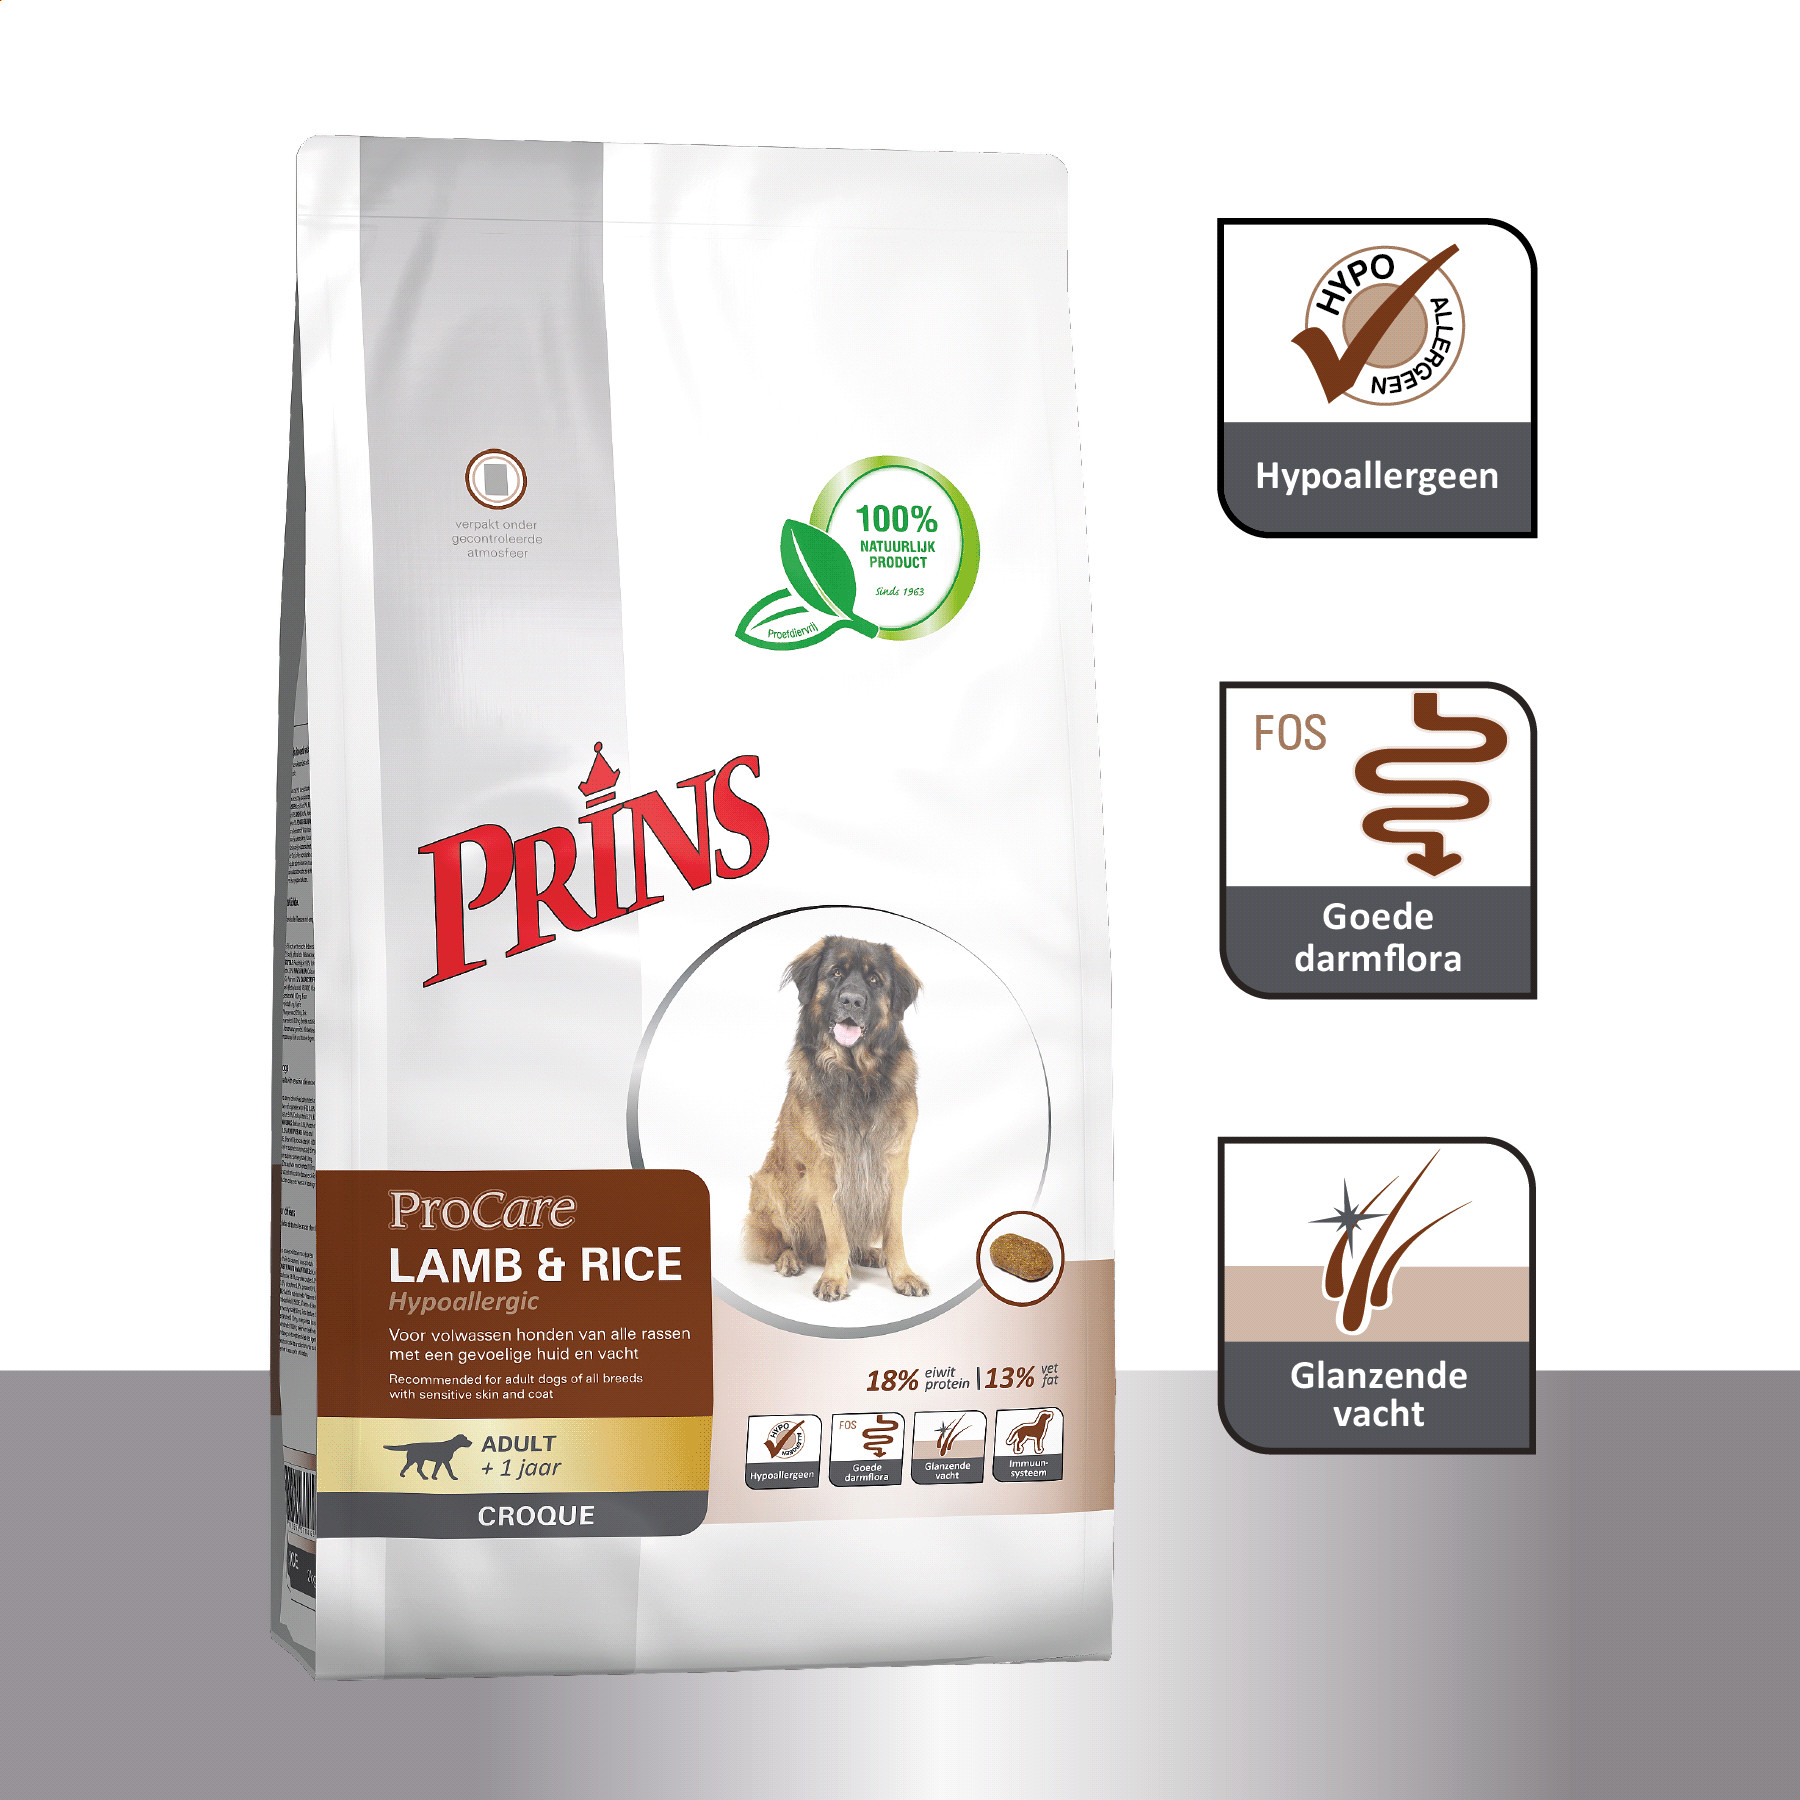 Prins ProCare Croque Hypoallergic met lam & rijst hondenvoer